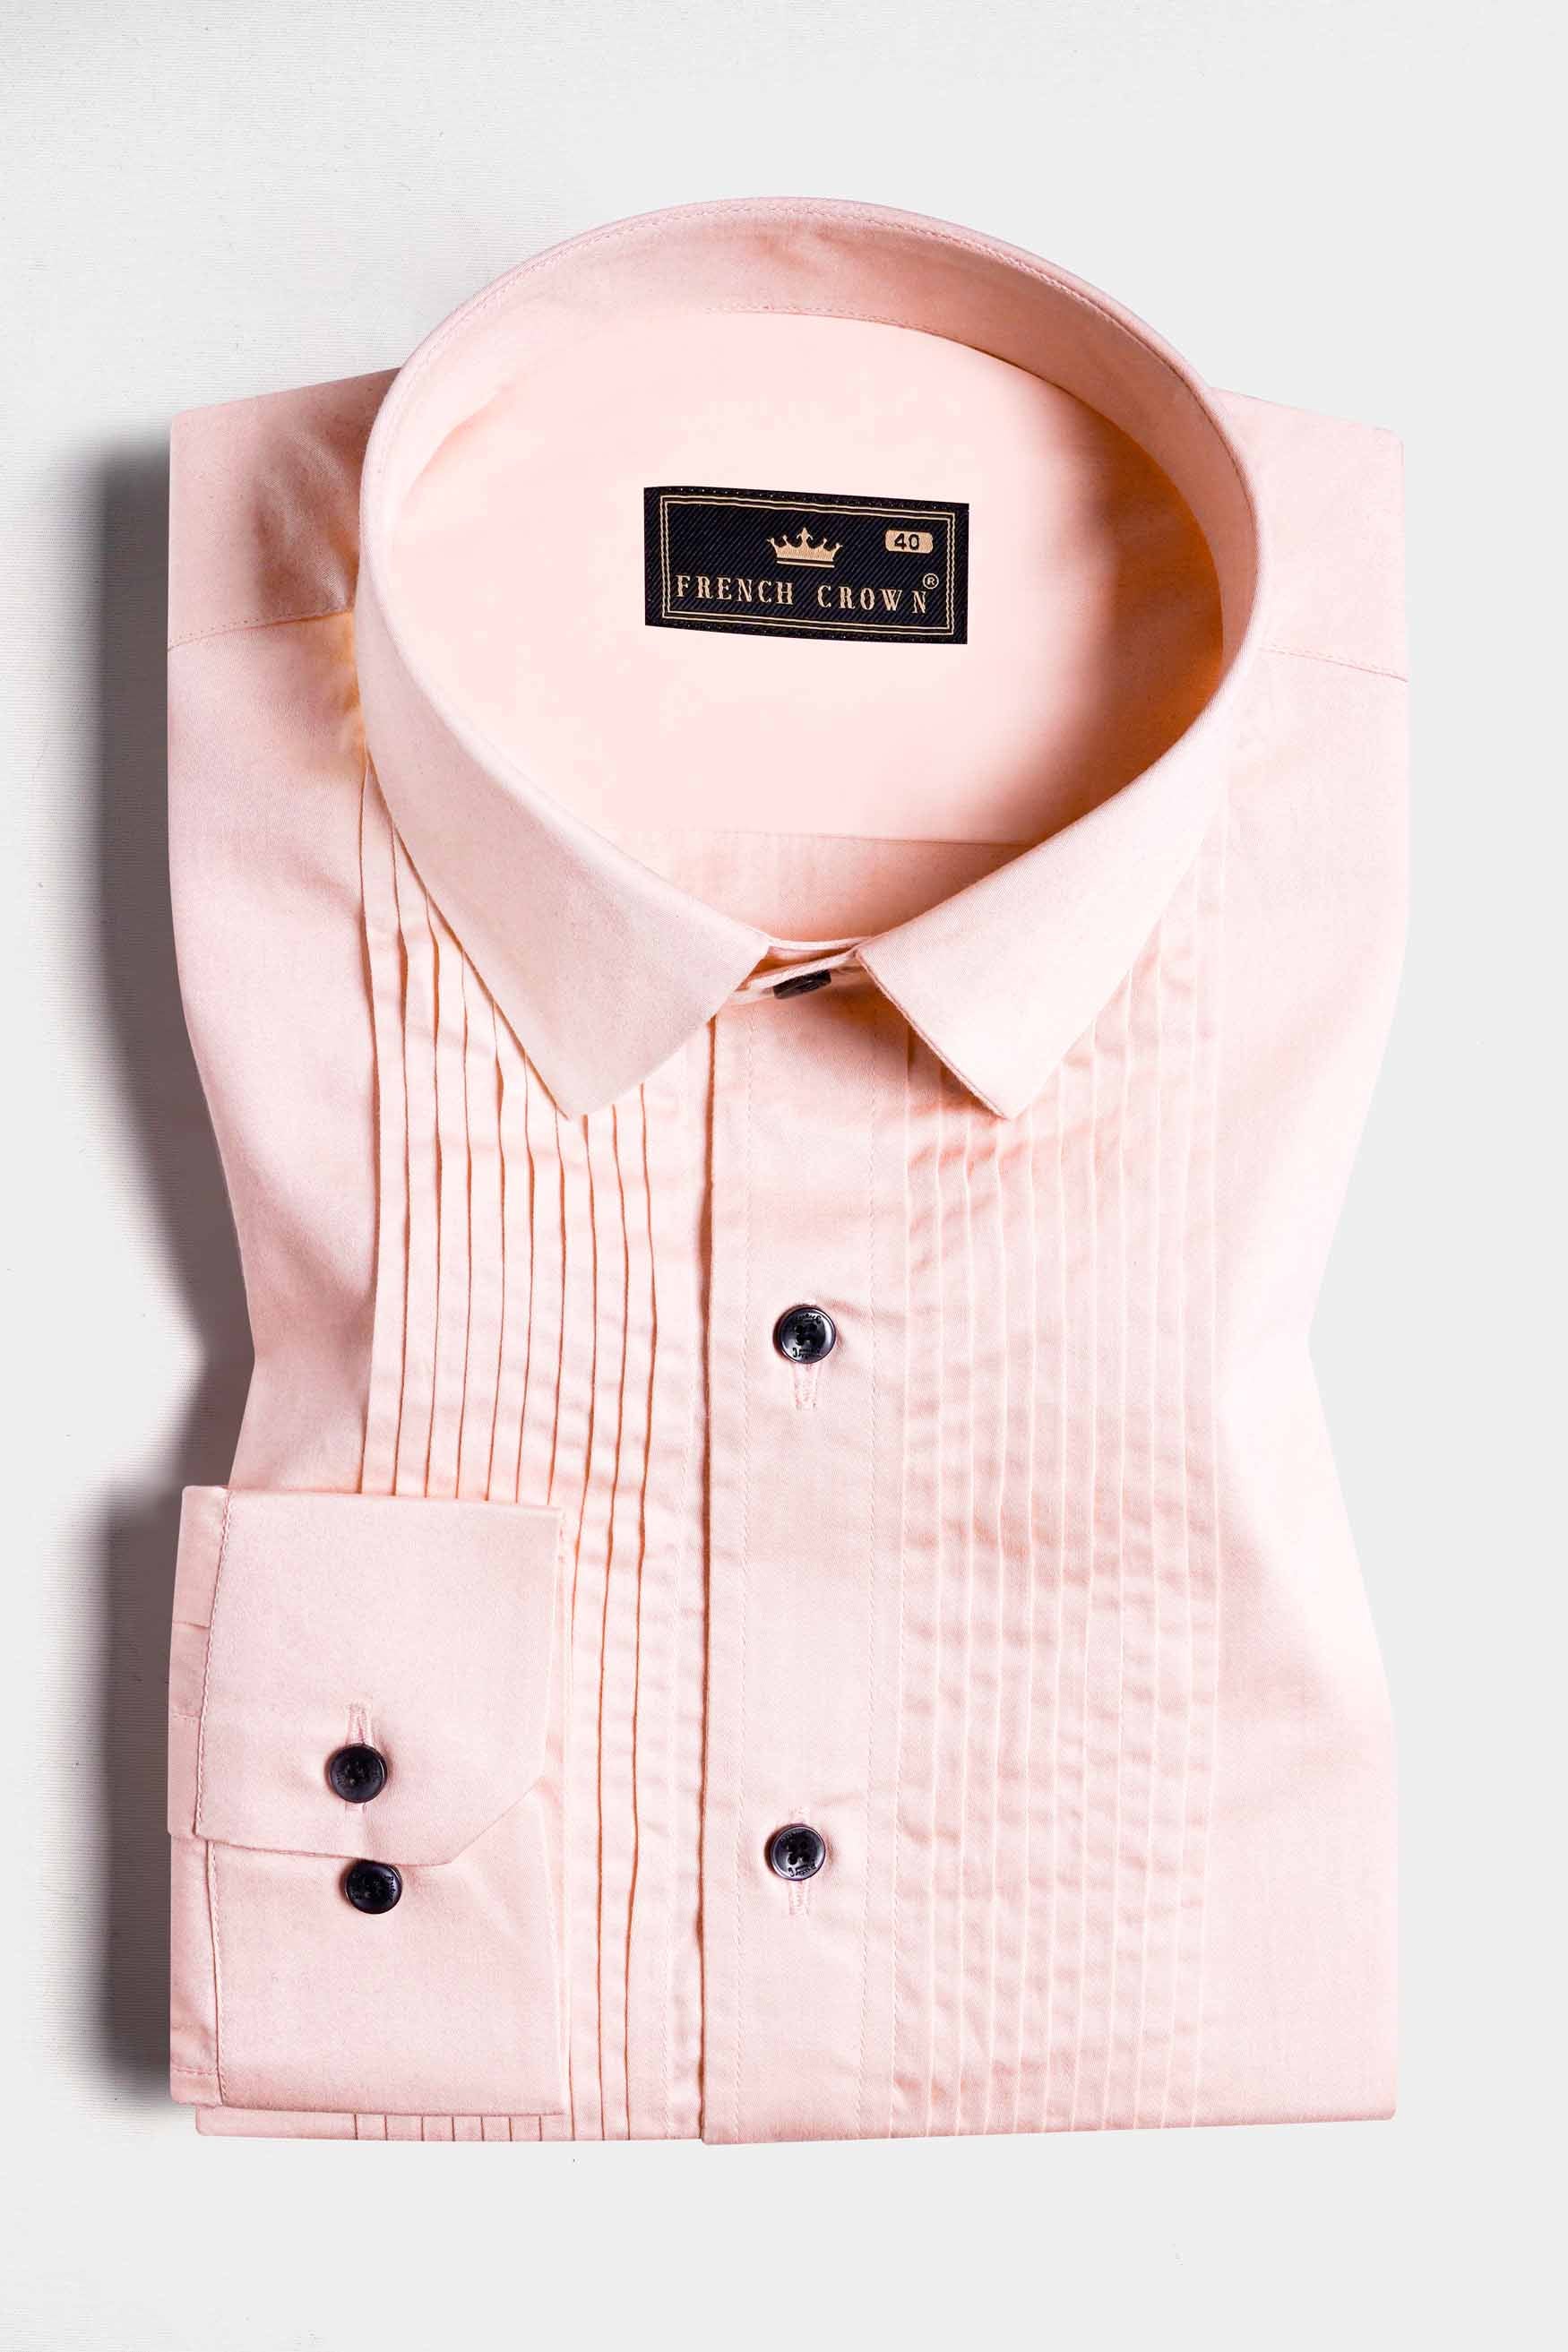 Crepe Peach Subtle Sheen Super Soft Premium Cotton Tuxedo Shirt